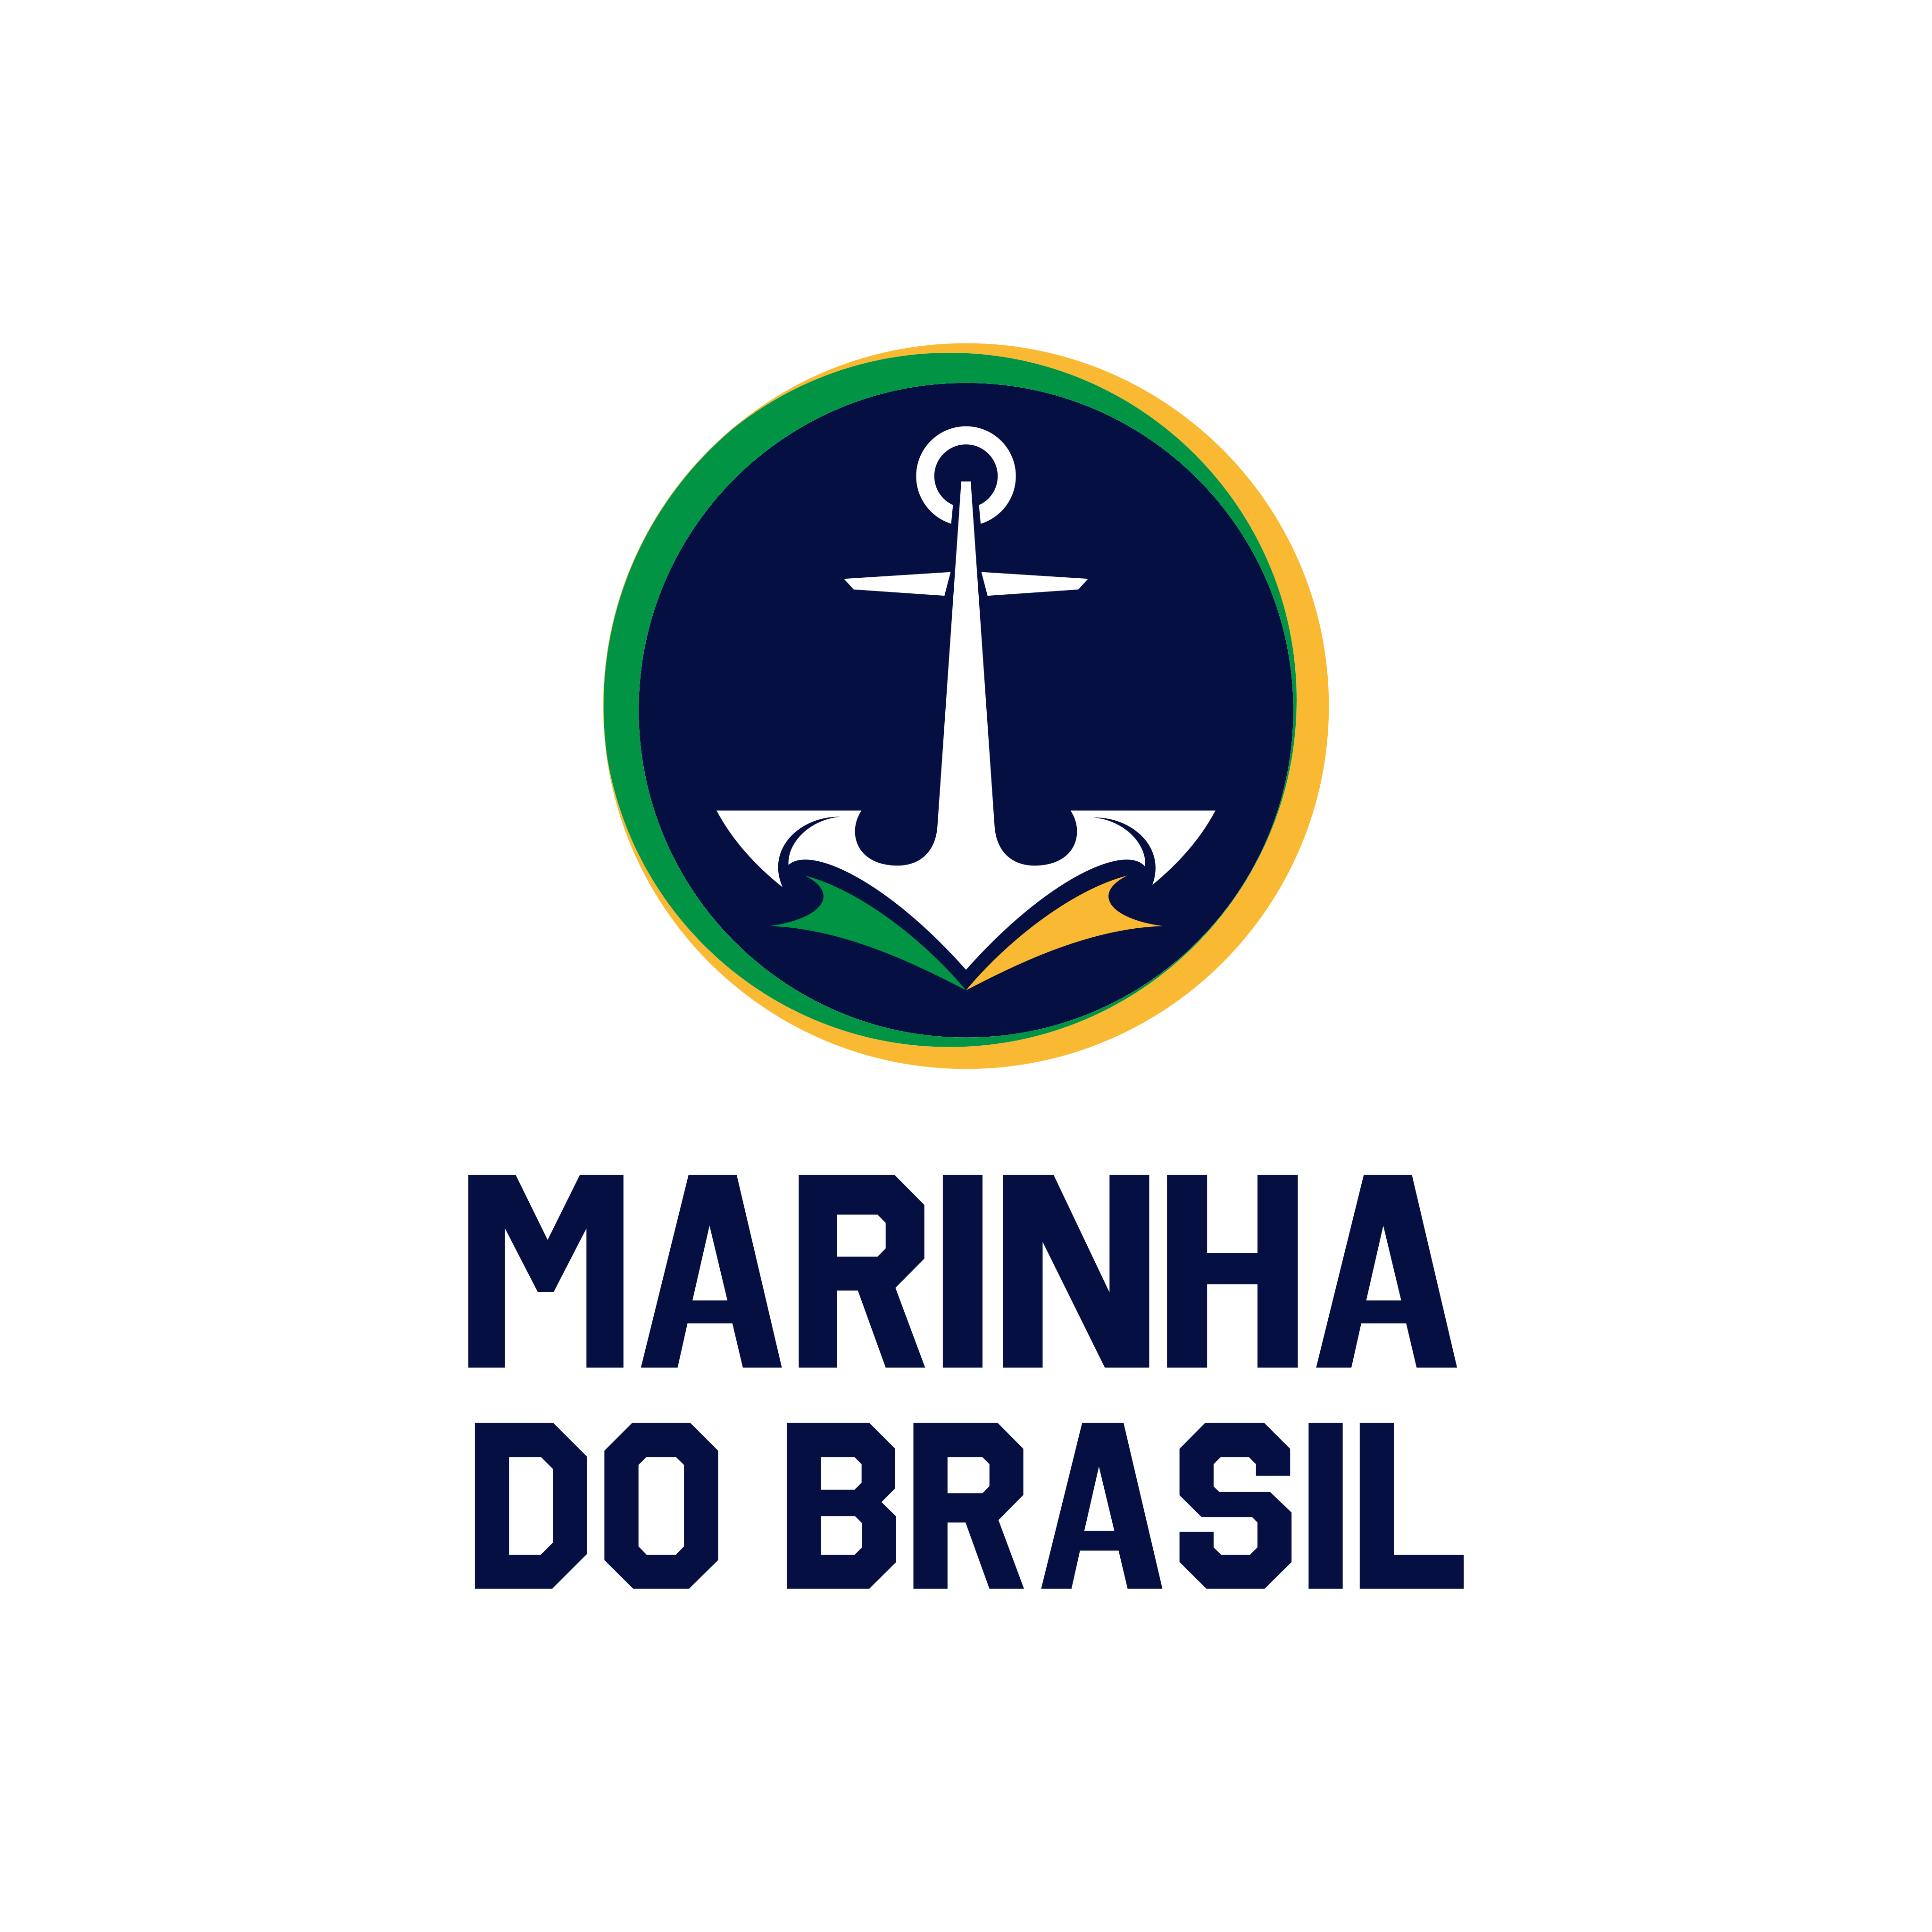 marinha-brasil-logo-0